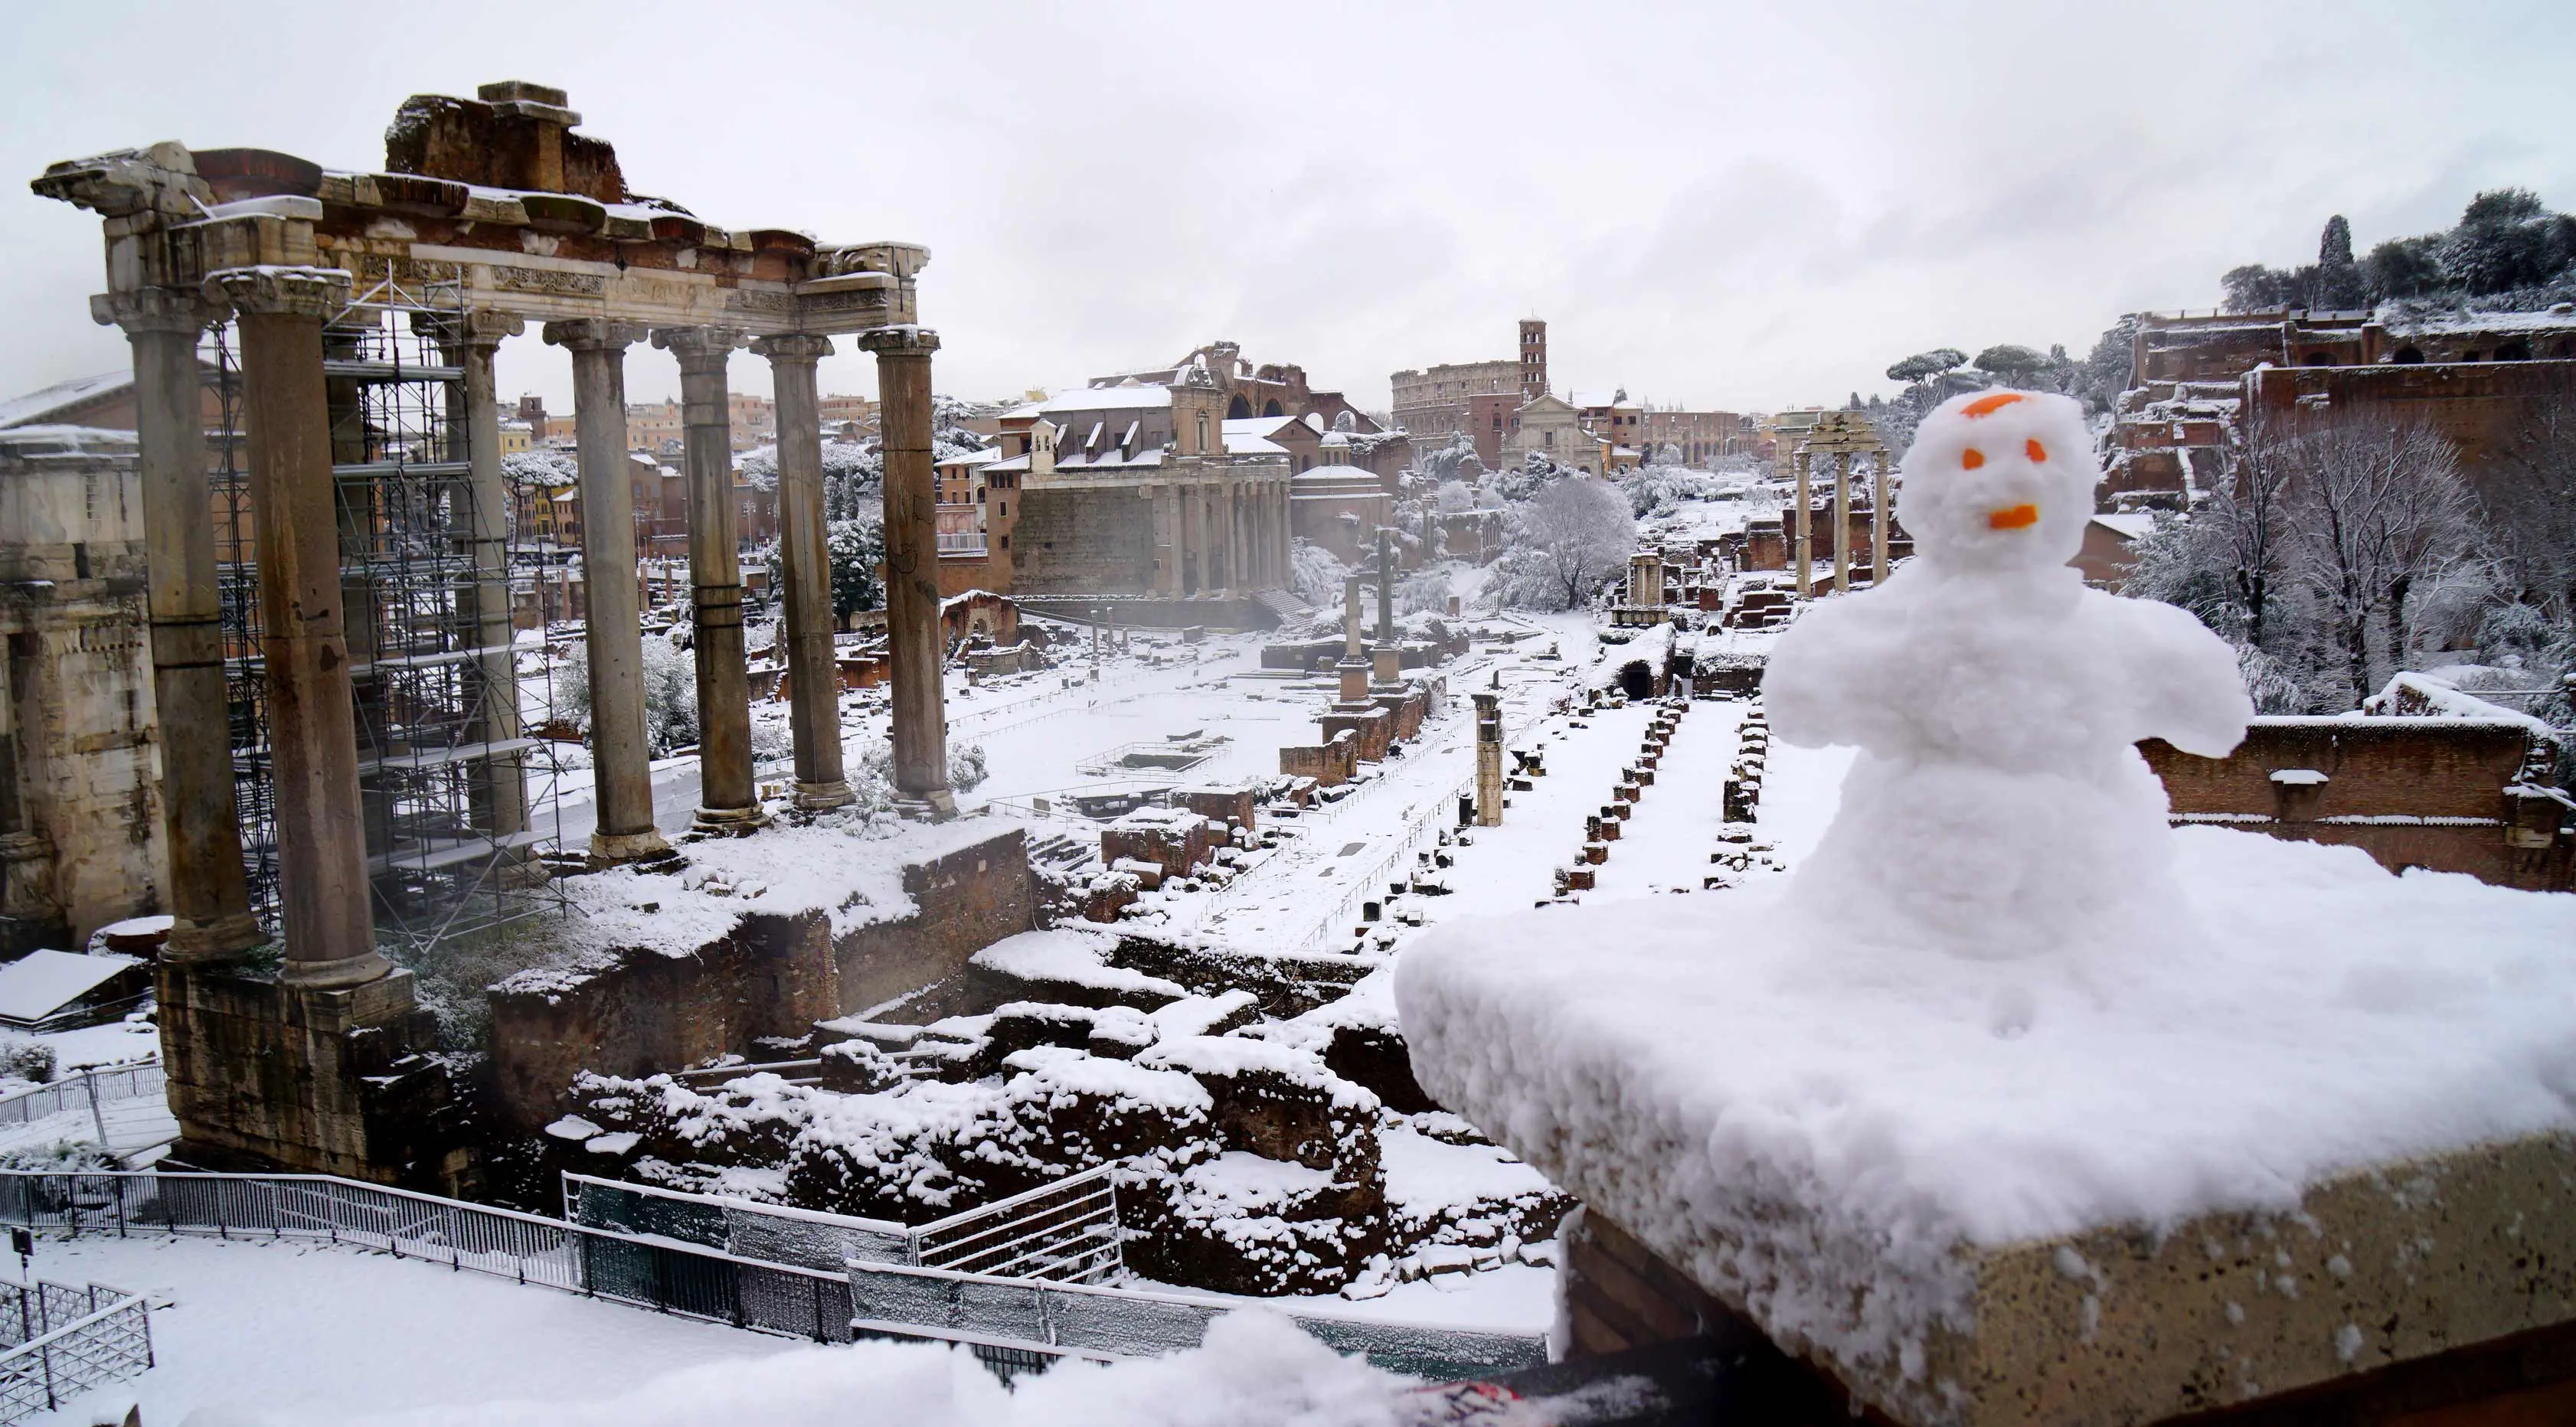 Manusia salju terlihat di dekat bangunan kuno di Roma, Italia (26/2). Badai salju yang melanda Italia menganggu transportasi dan sekolah diliburkan. (AFP Photo/Vicenzo Pinto)